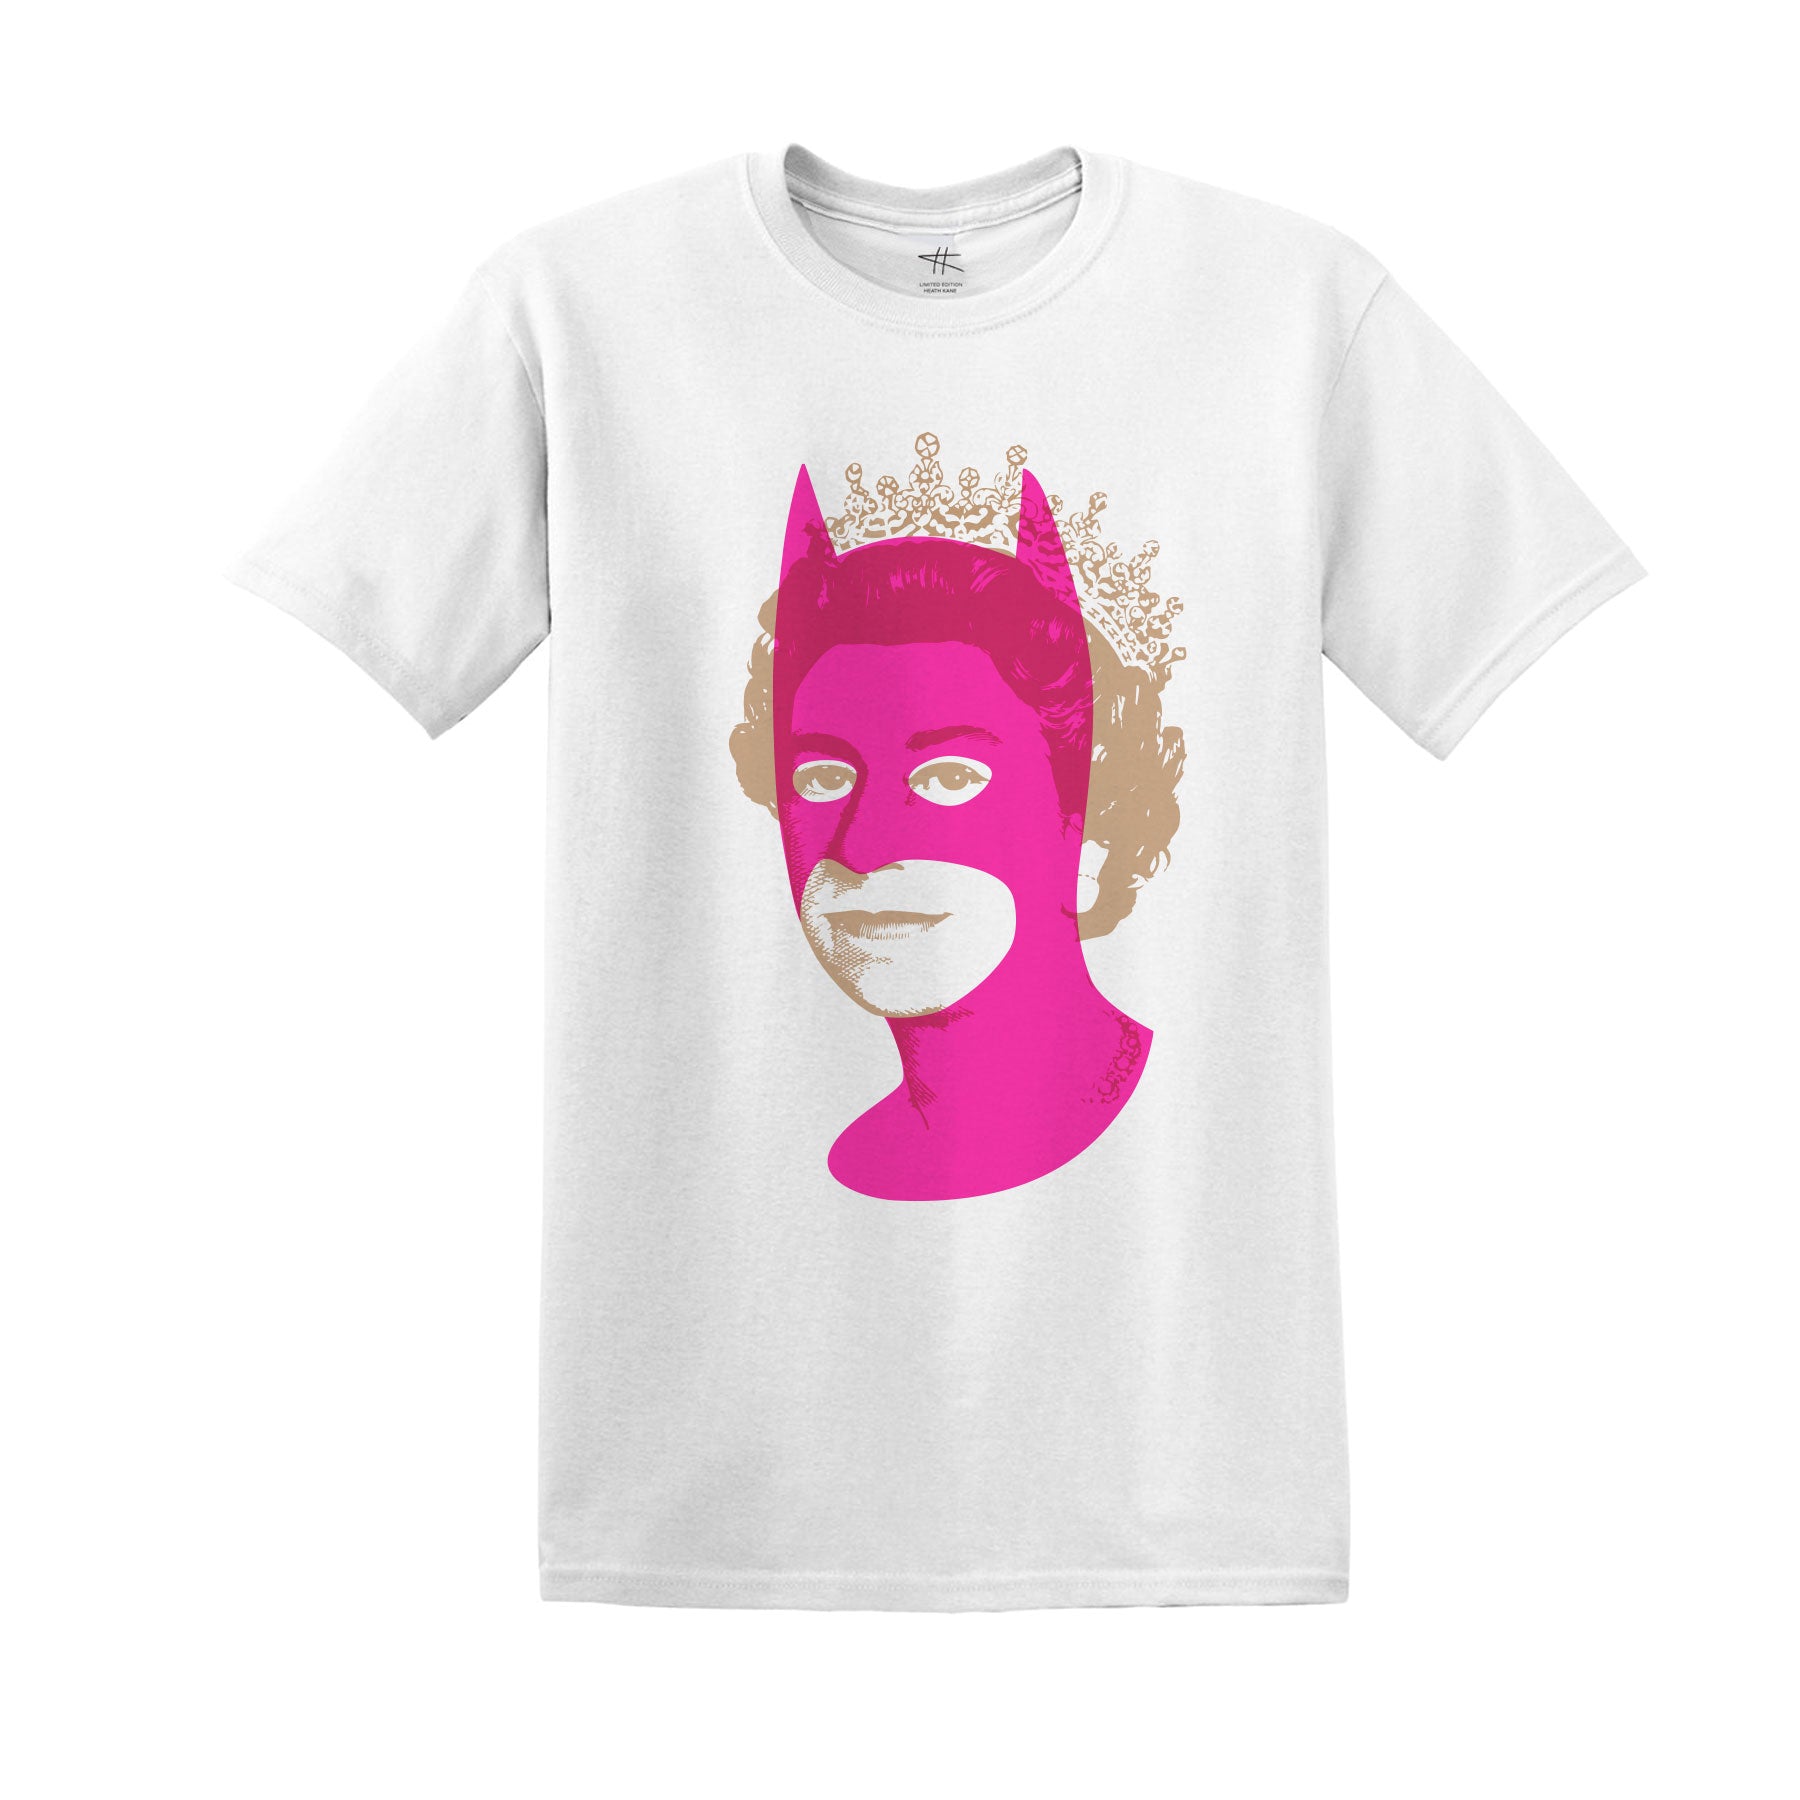 Rich Enough to be Batman - Neon Pink/Gold T-shirt